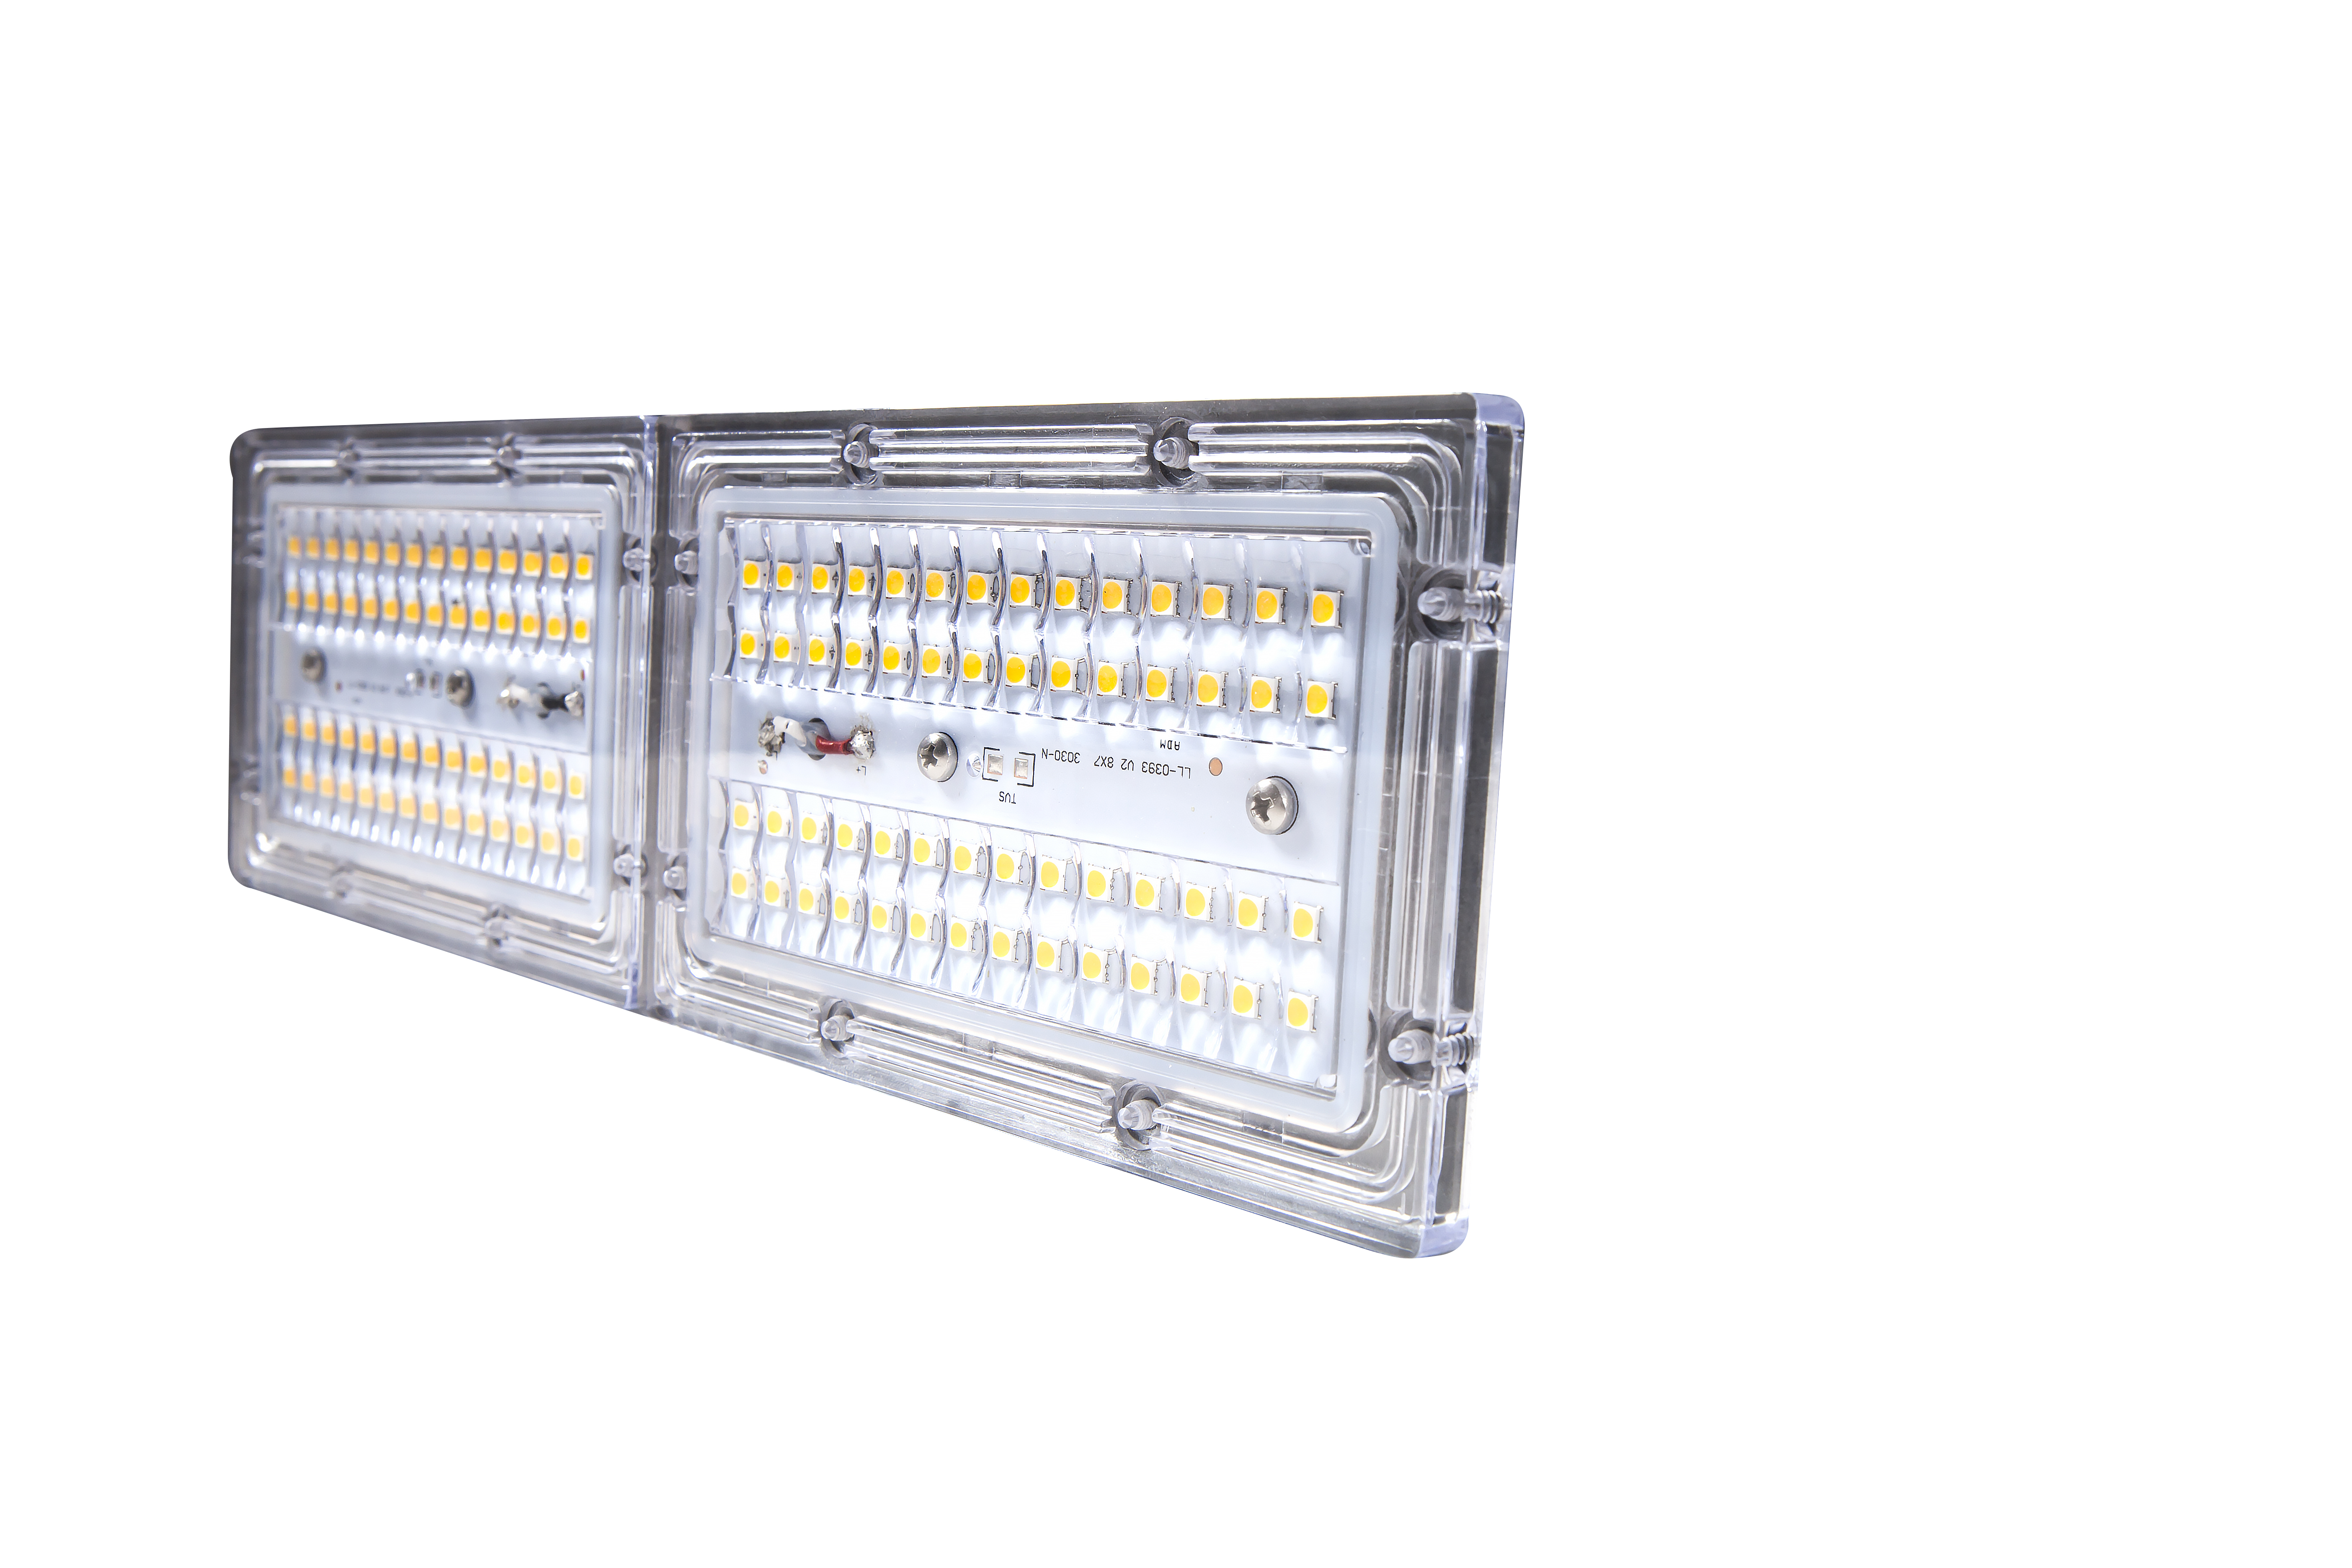 Đèn đường hầm LED dòng TE - Năm mô-đun (Giá đỡ quốc tế)